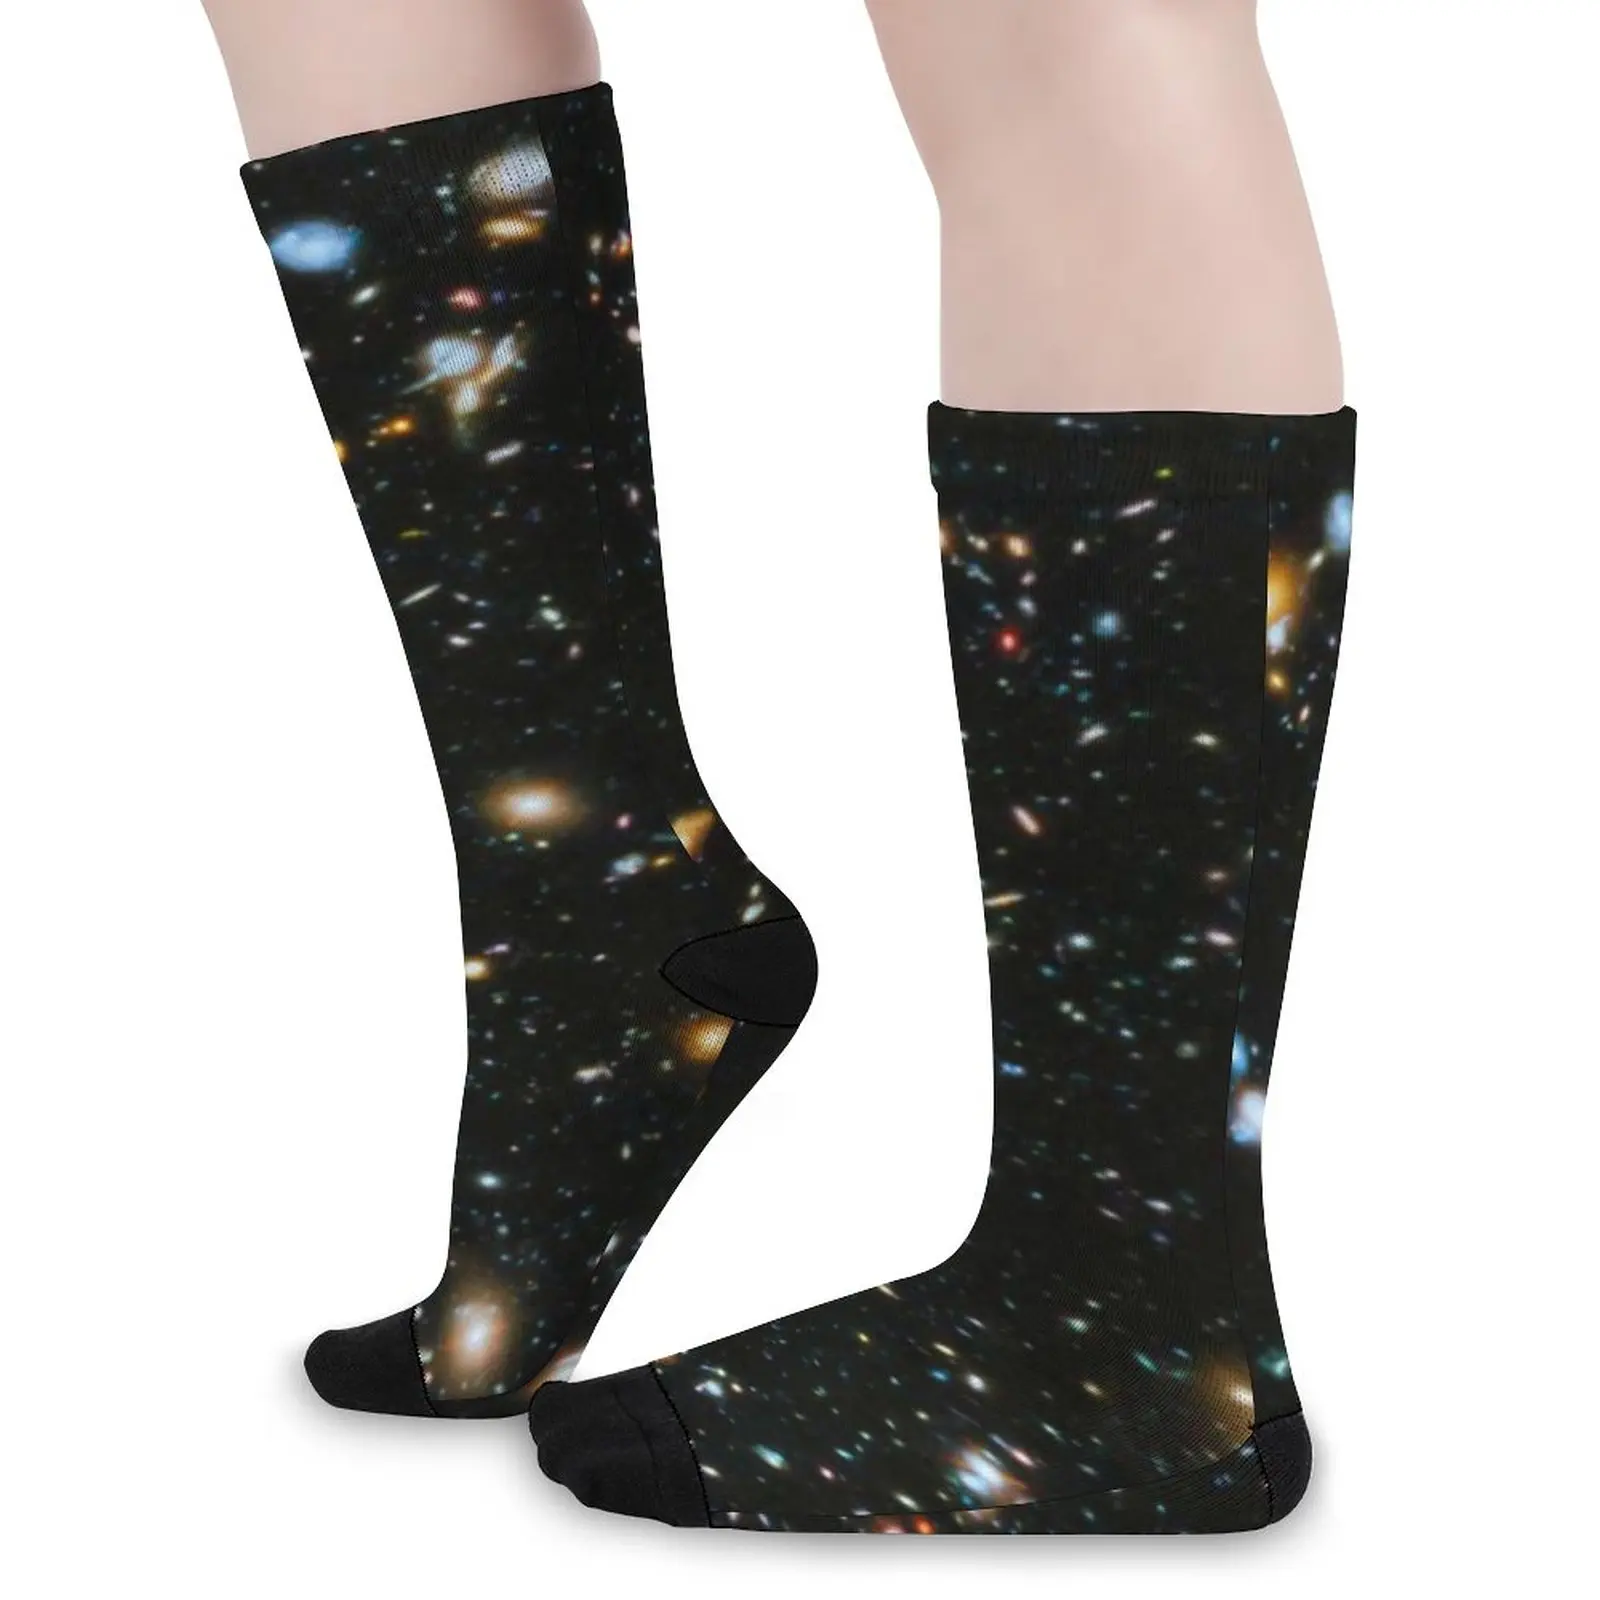 

Чулки Galaxy Star художественные Звезды Космос черные забавные носки на заказ осенние нескользящие носки парные качественные носки для скалолазания